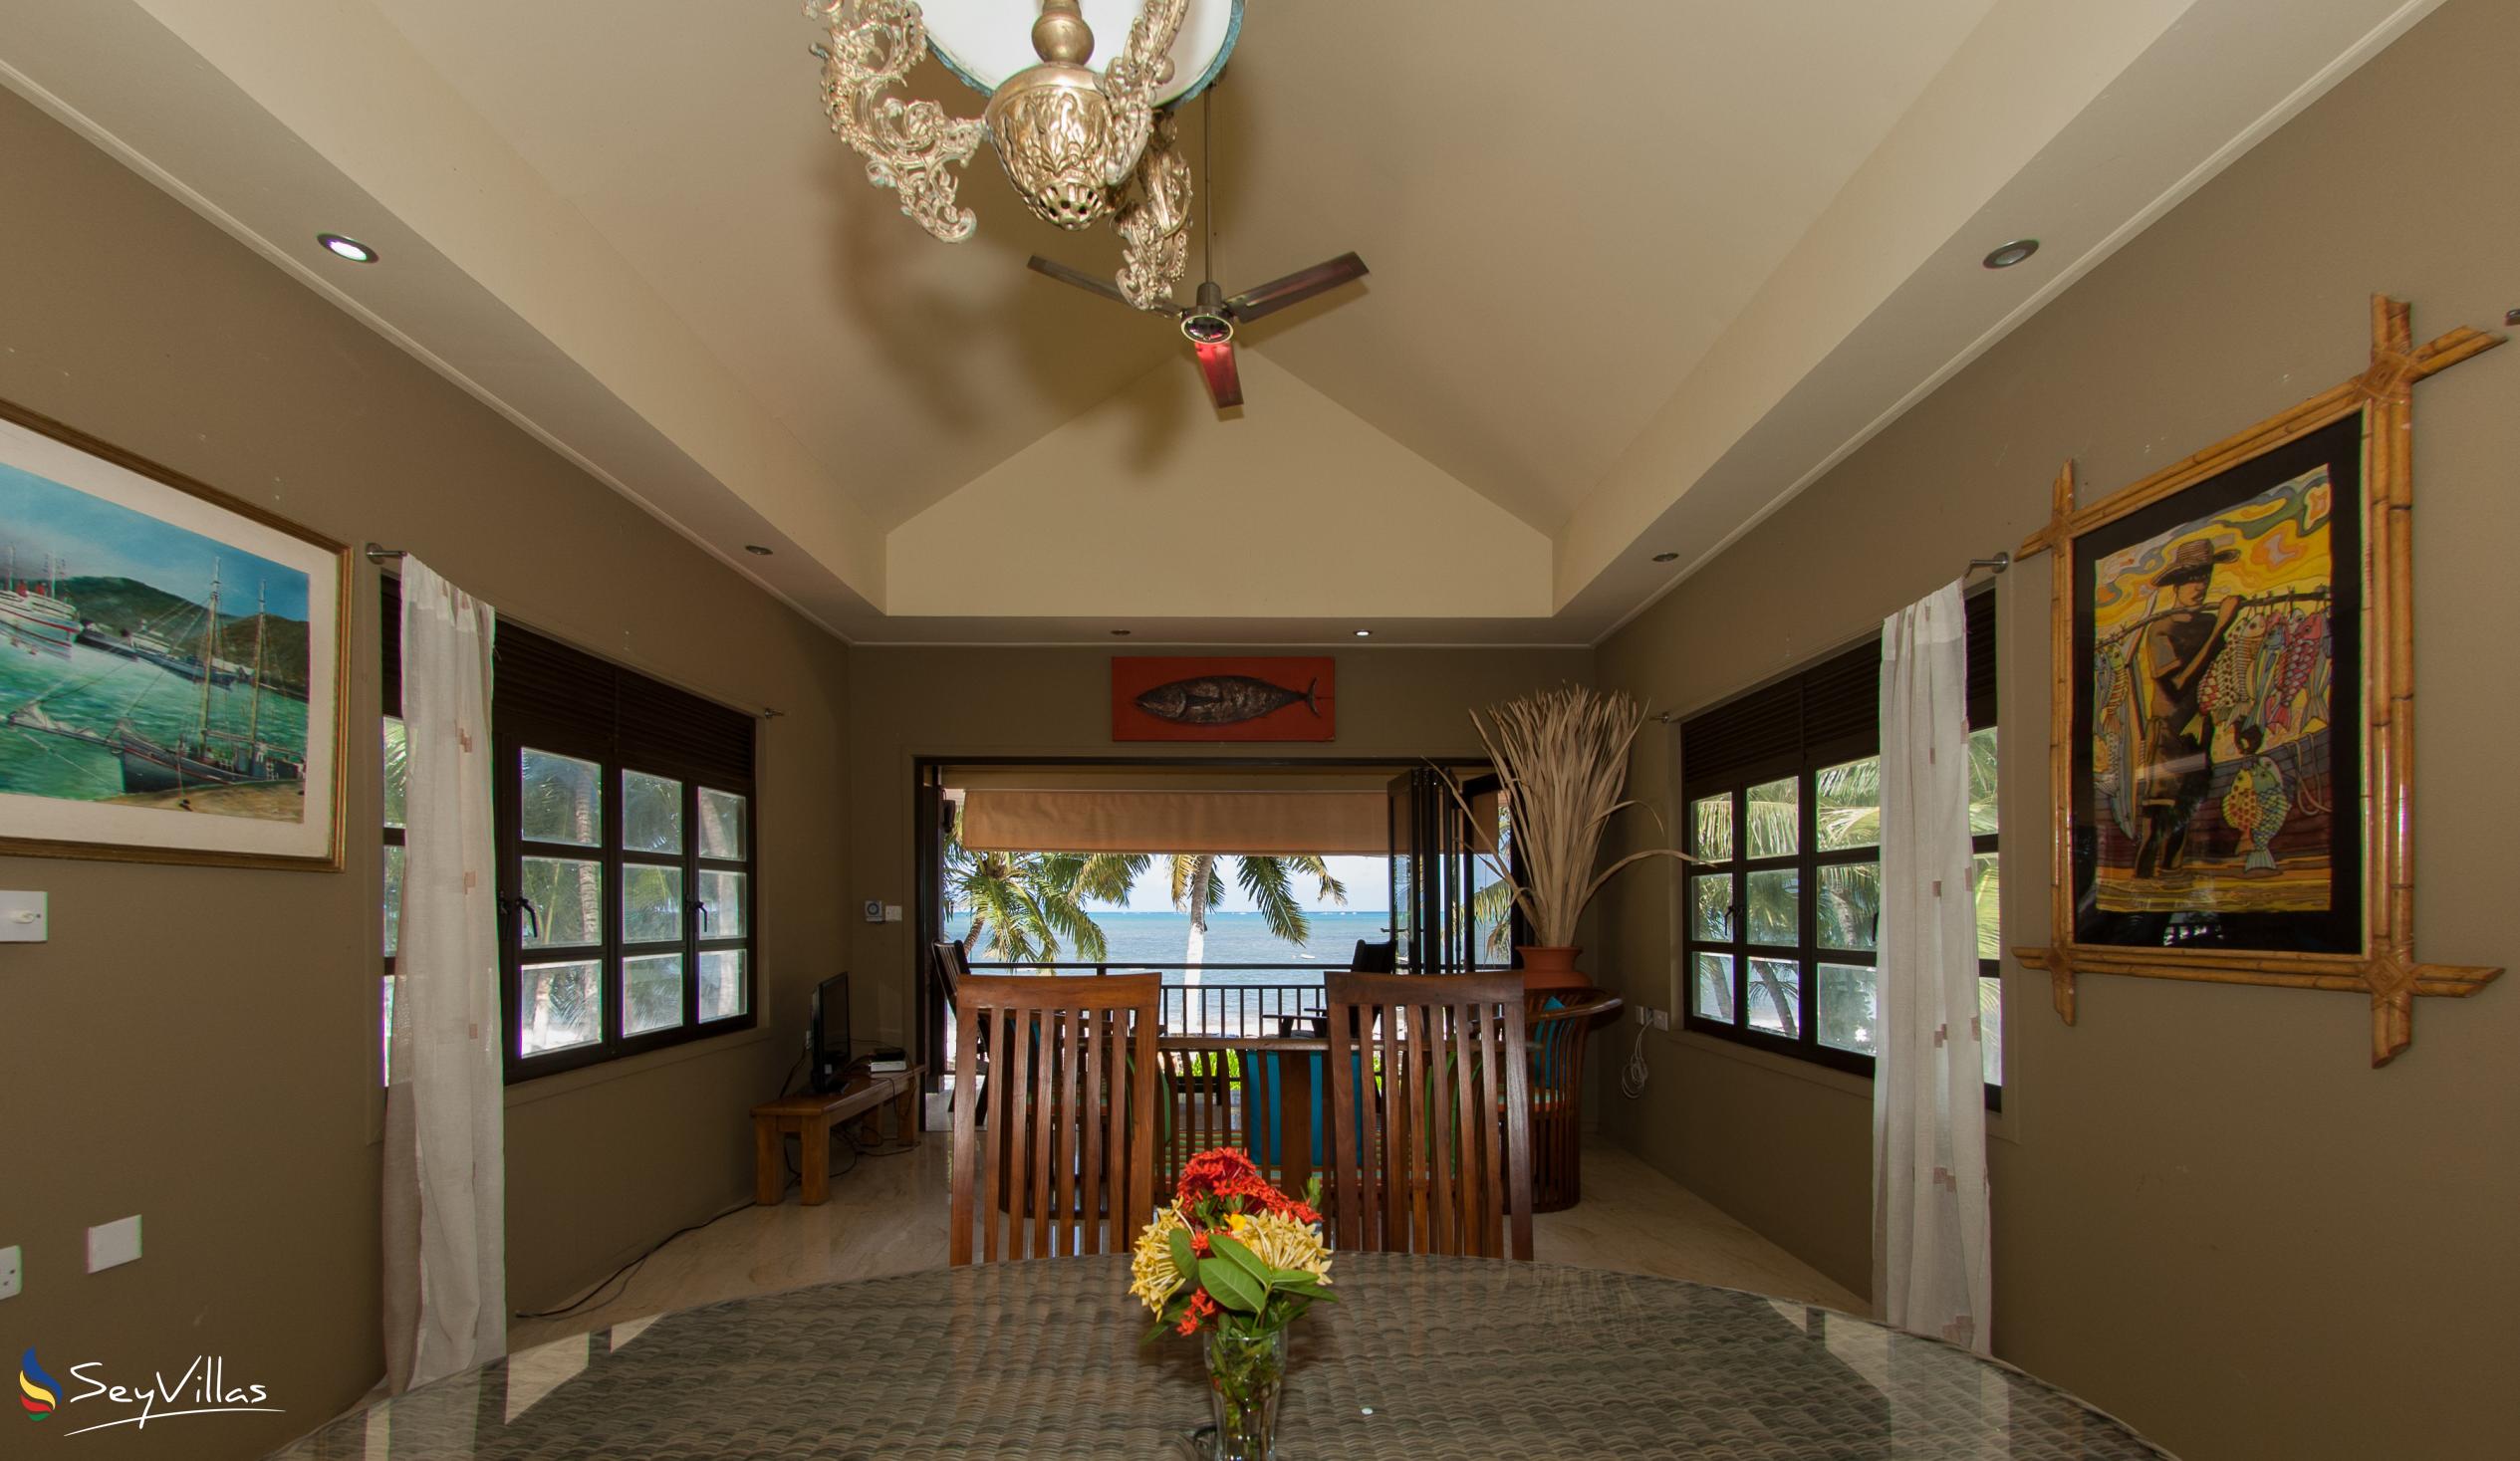 Foto 76: Villas des Alizes - Strand Suite - Praslin (Seychellen)